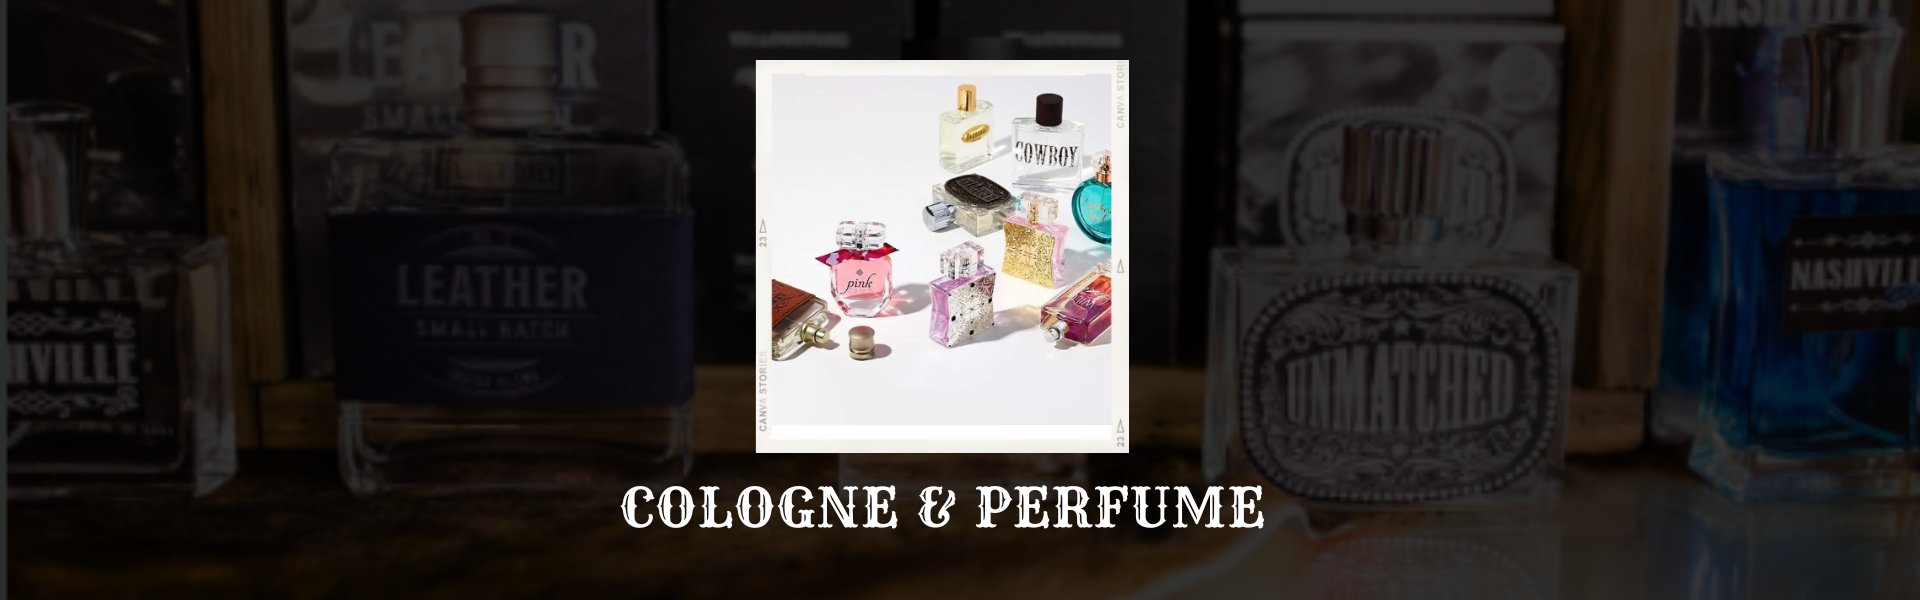 Cologne & Perfume